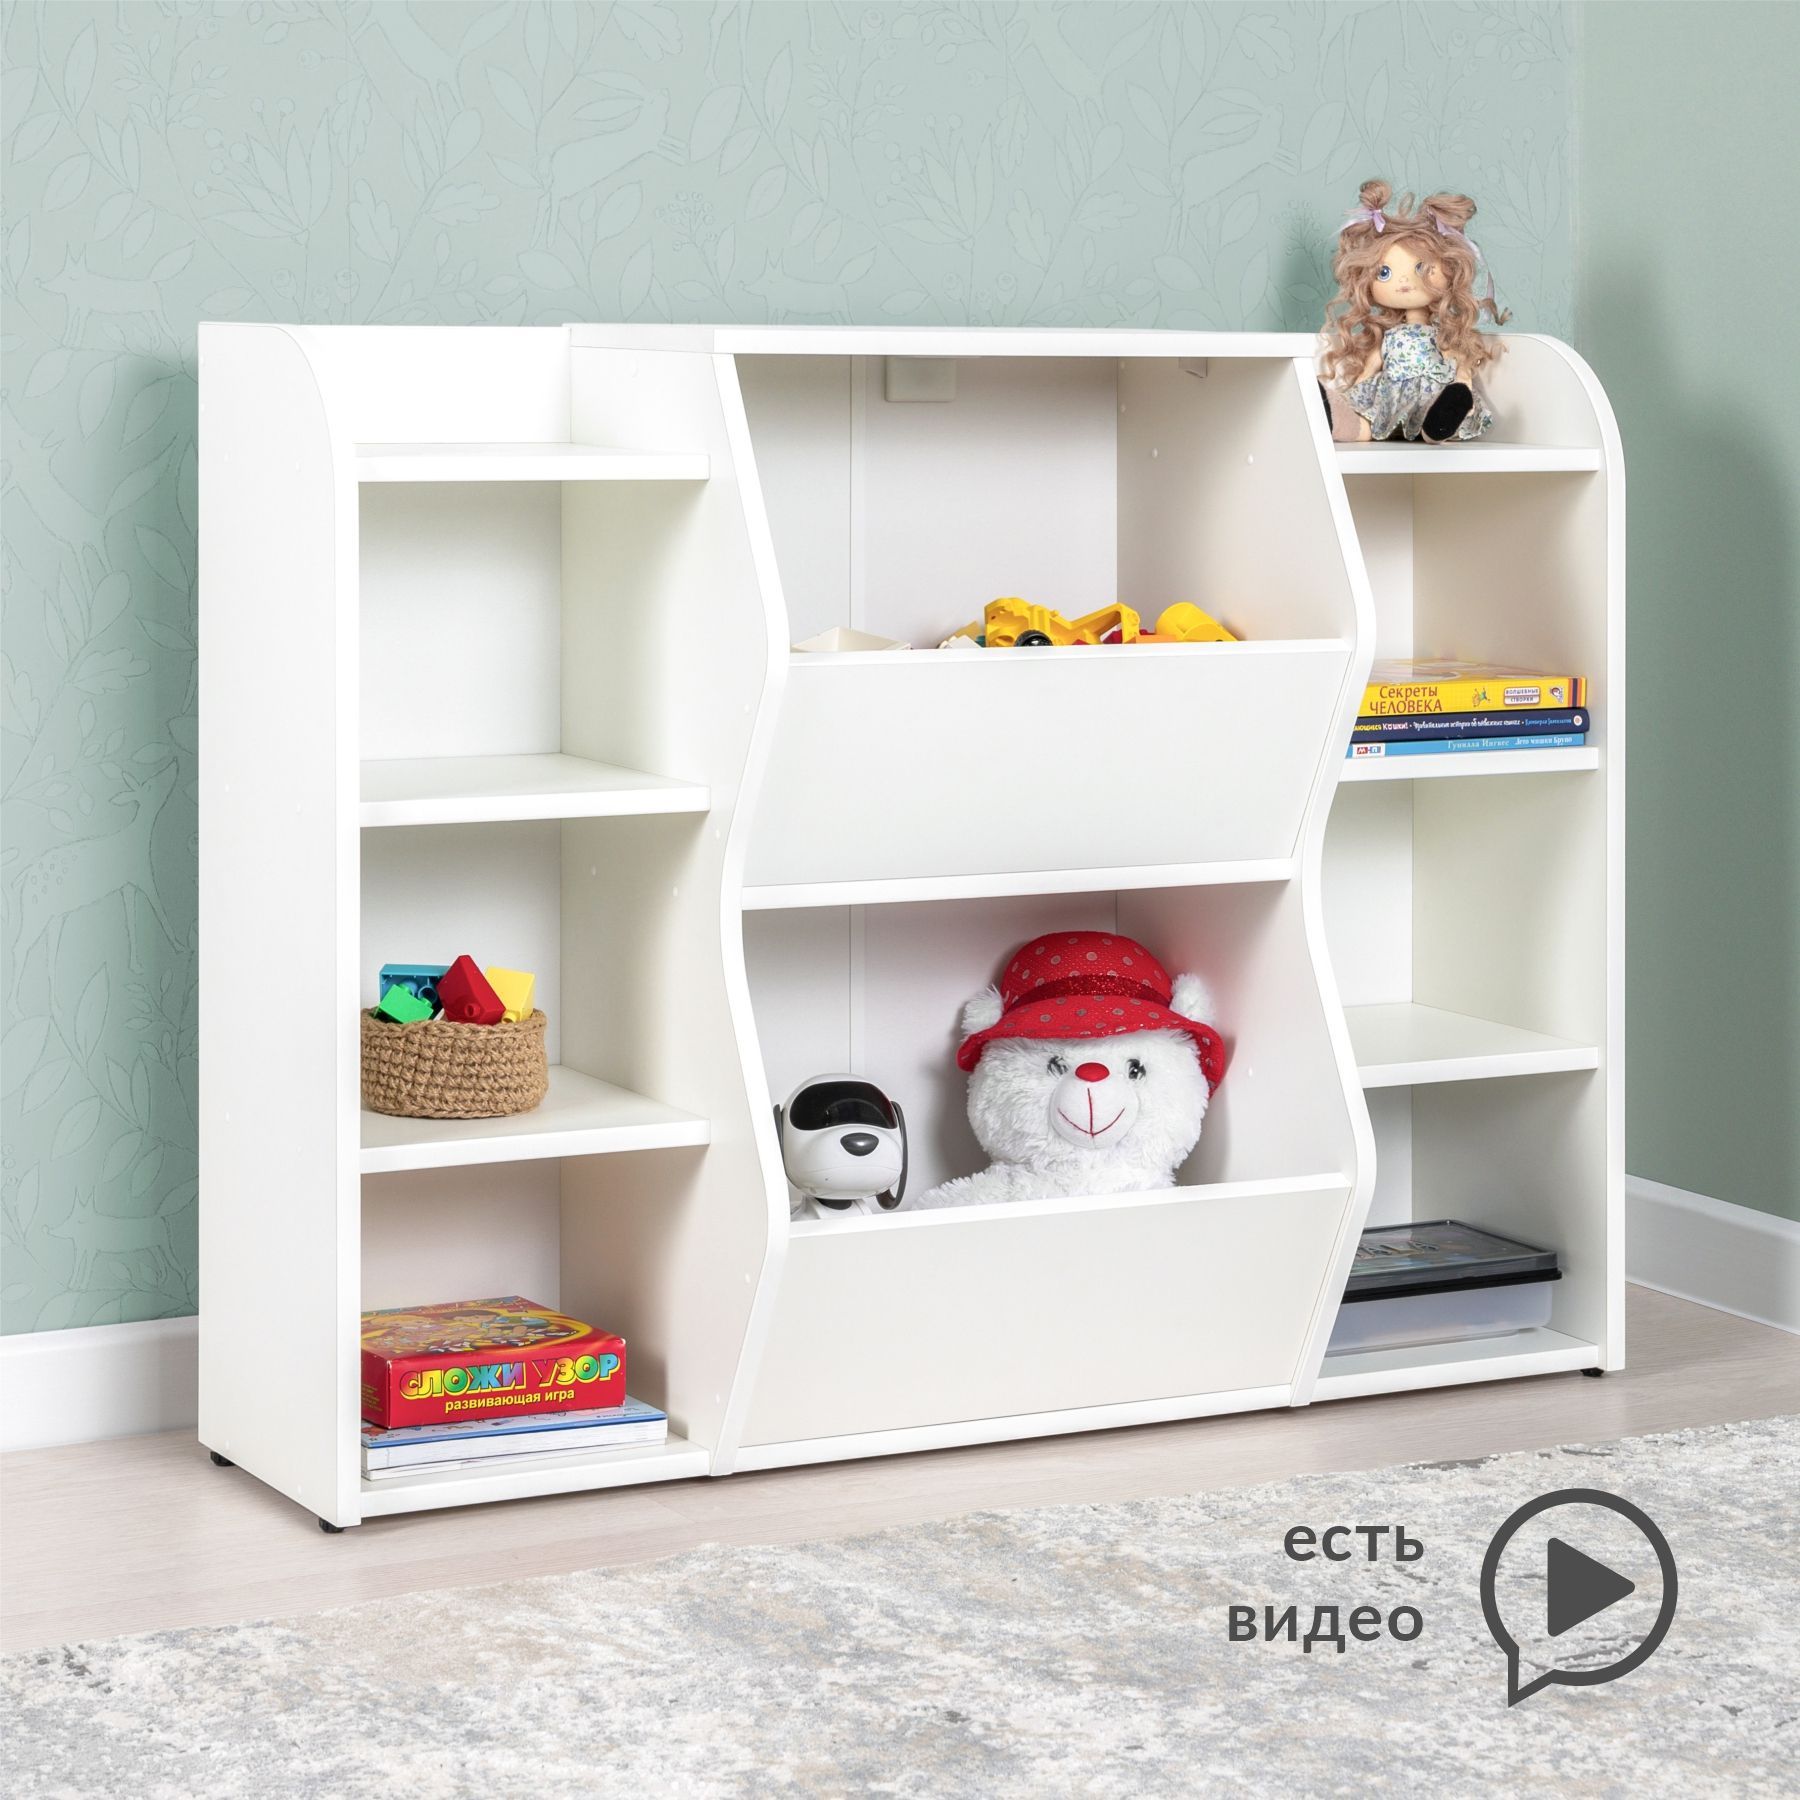 Стеллажи для игрушек в детскую комнату - купить в Москве товары хранения по доступной цене